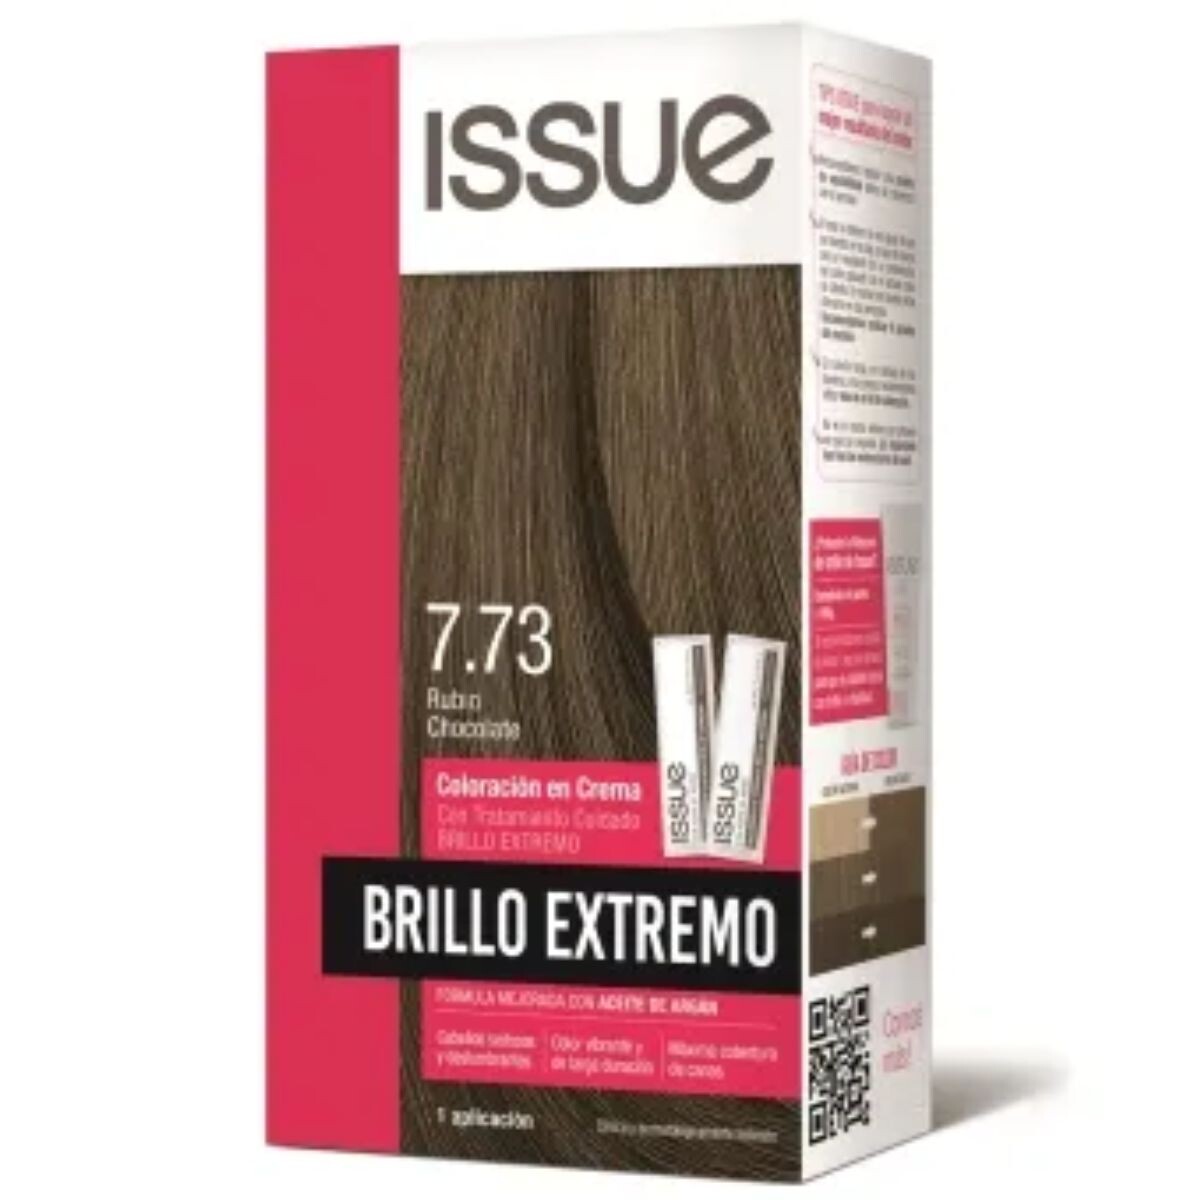 Tinta Issue Brillo Extremo Kit Rubio Chocolate 7.73 